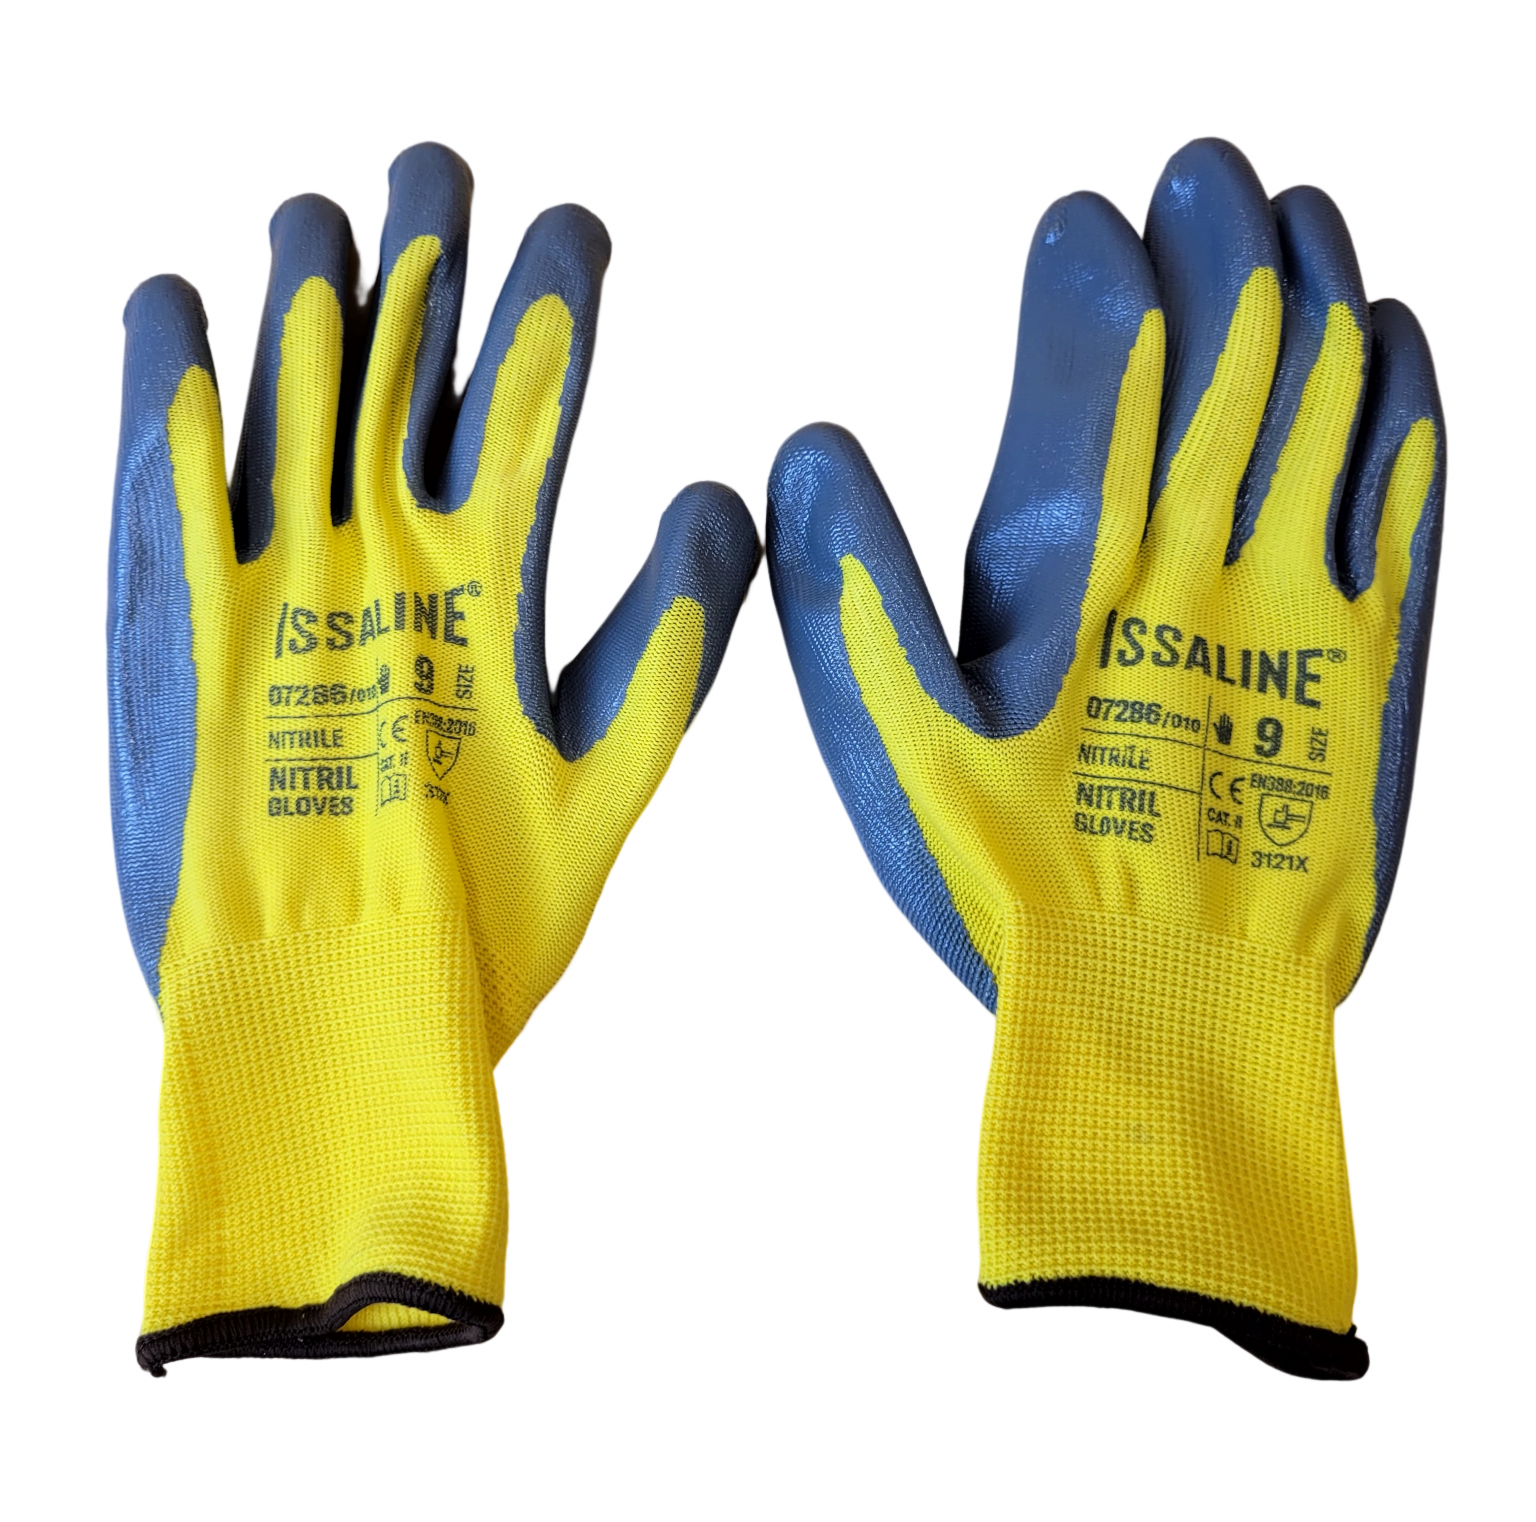 gants-de-protection-pose-carrelage-07286-jaune-taille-9-(2)